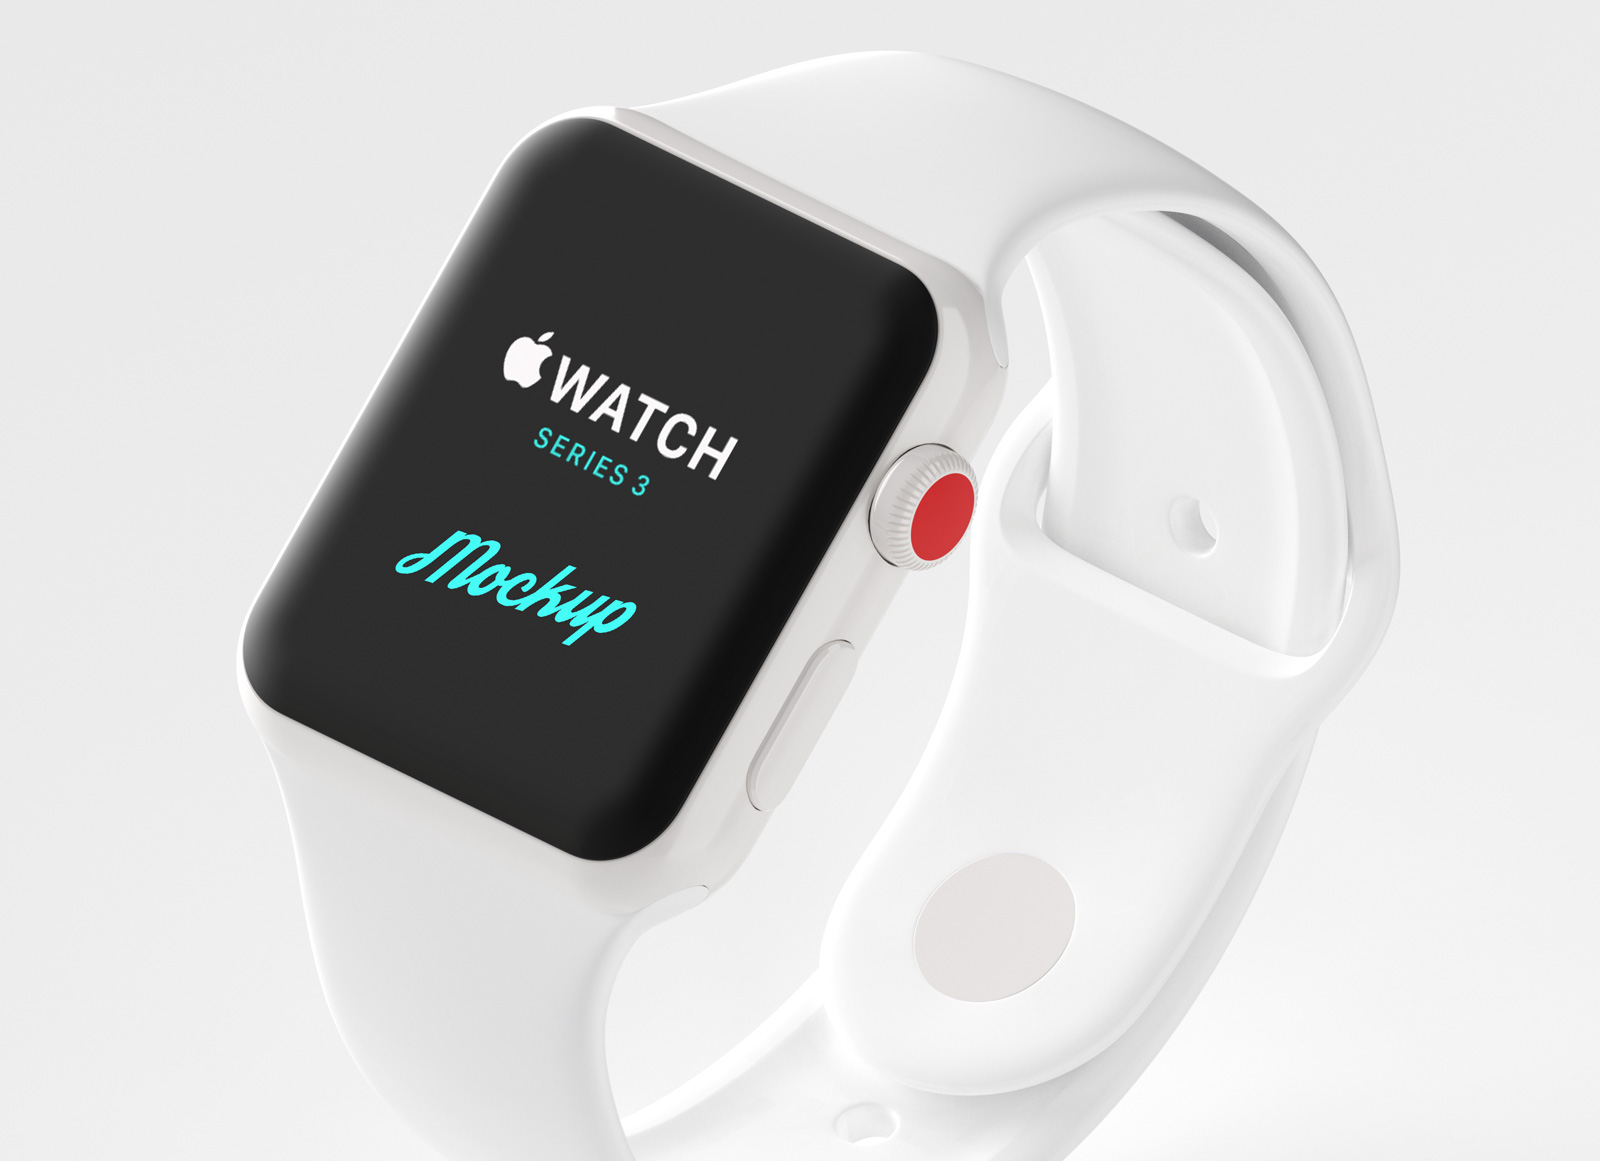 Maqueta del Apple Watch Series 3